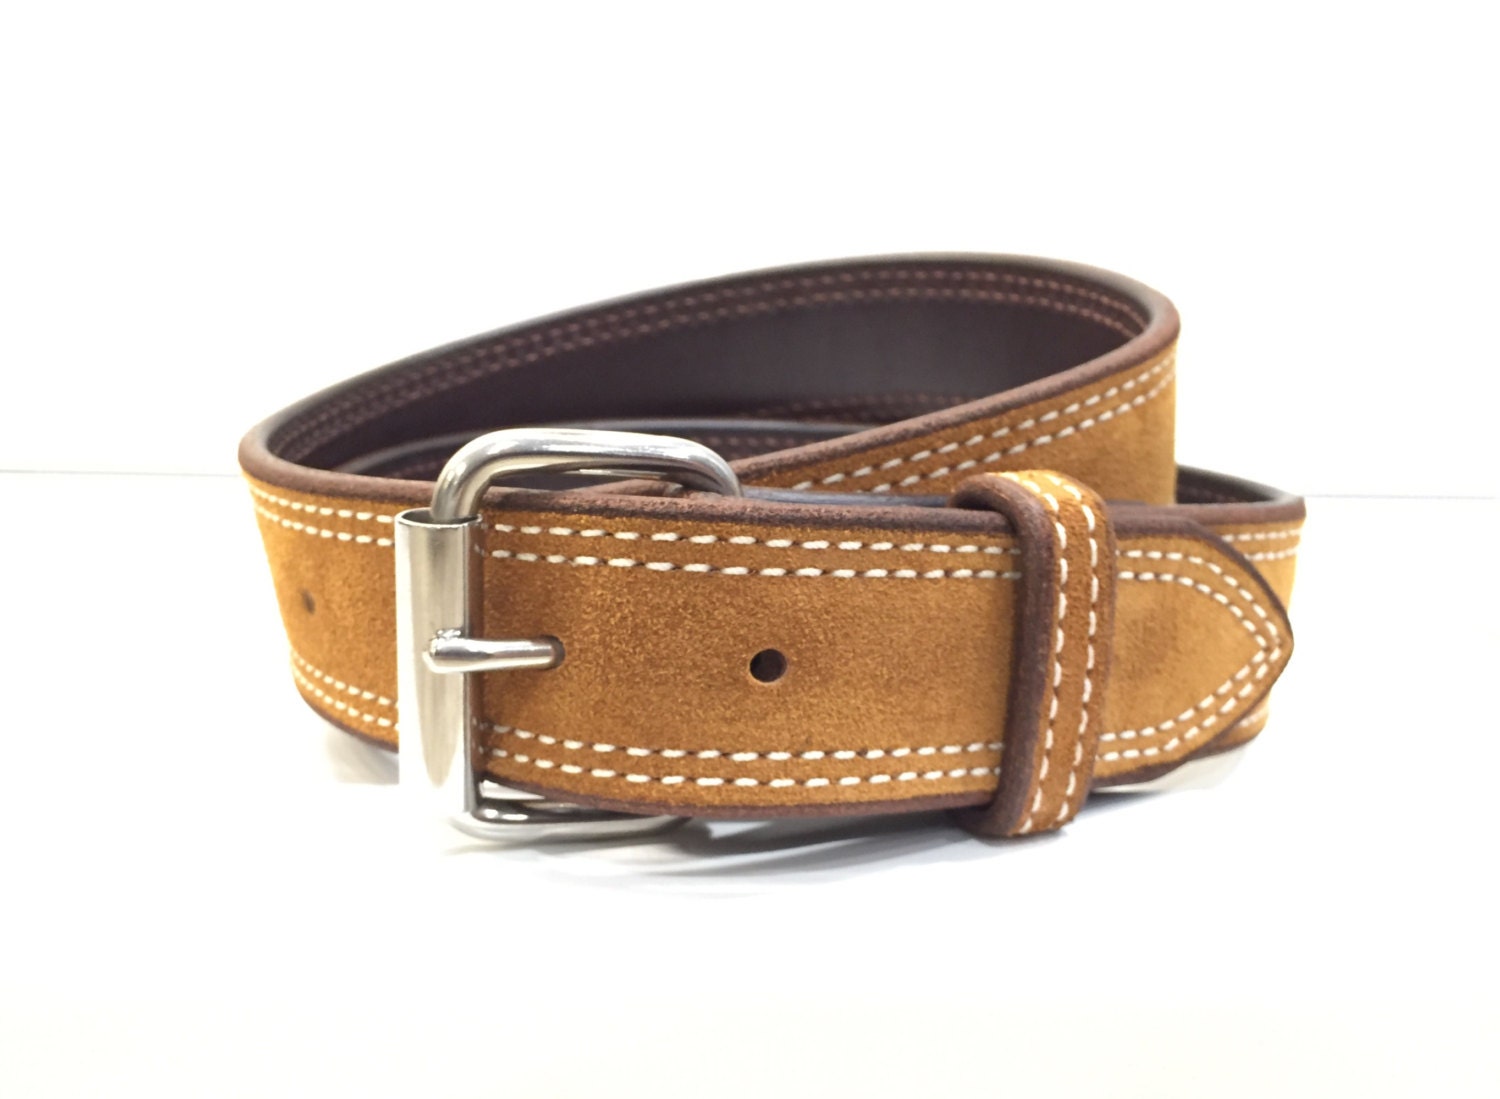 Toast Suede Belt Light Brown Belt Suede Belt Leather Belt